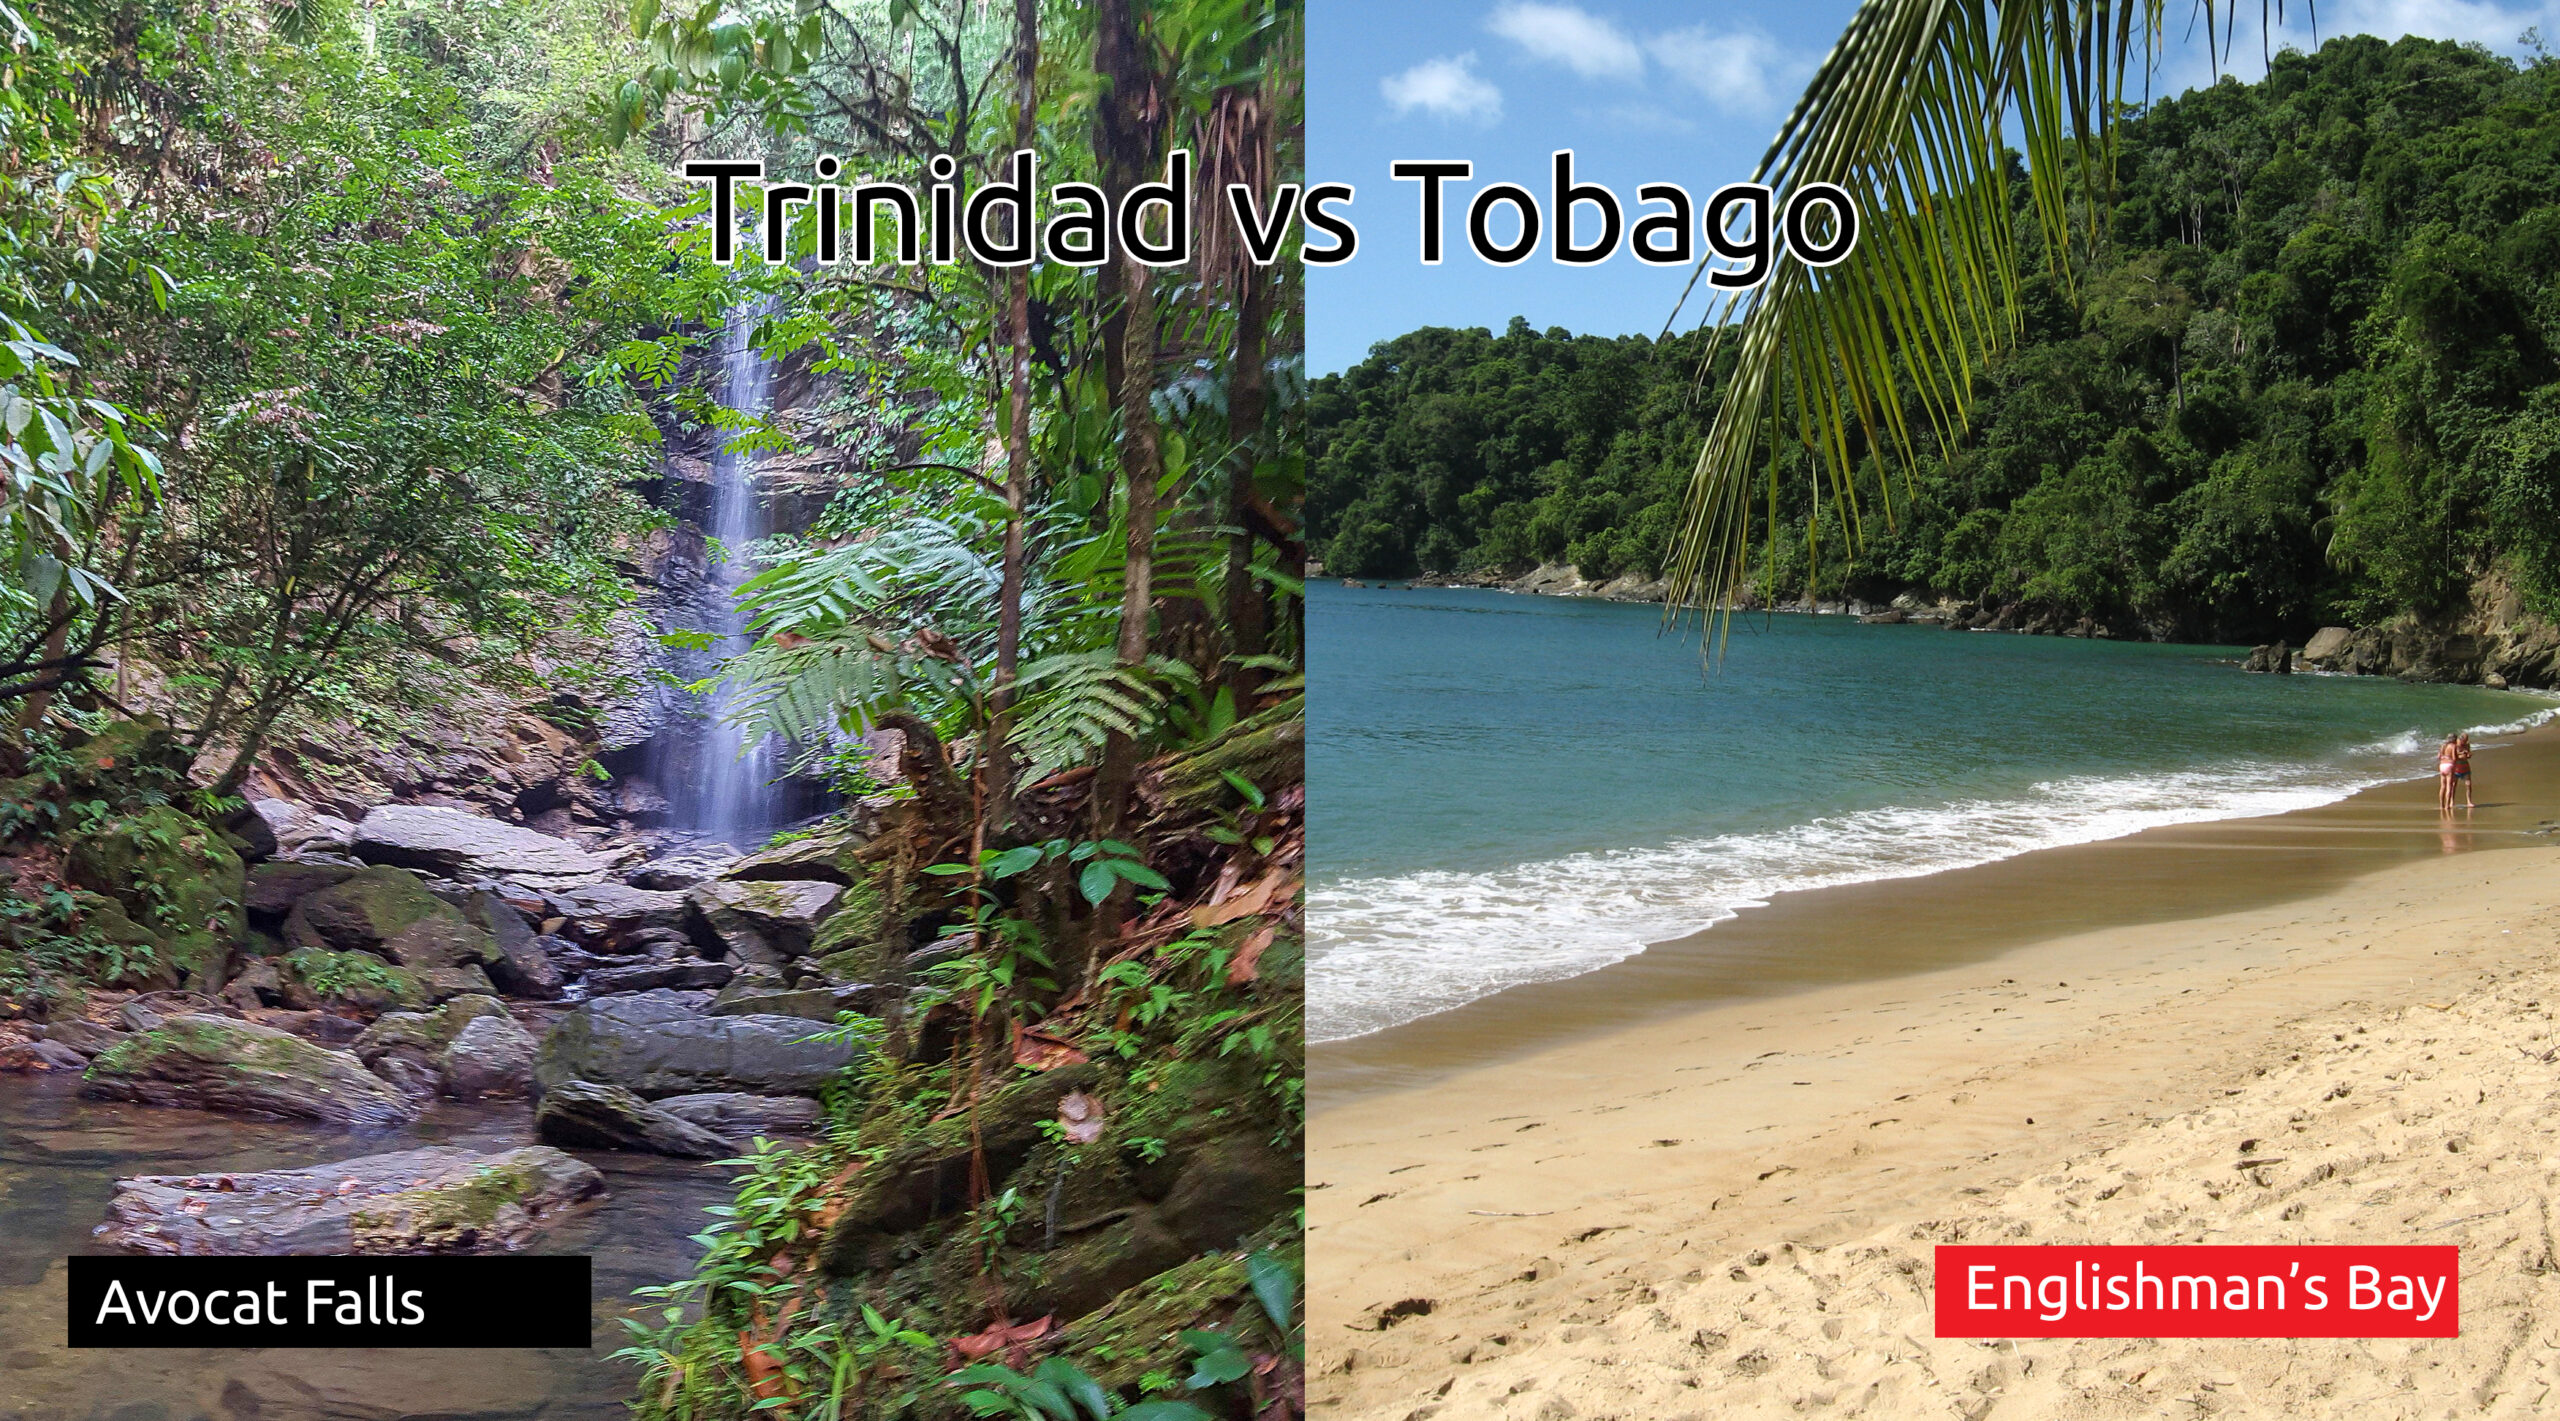 Trinidad VS Tobago? Pick an Island